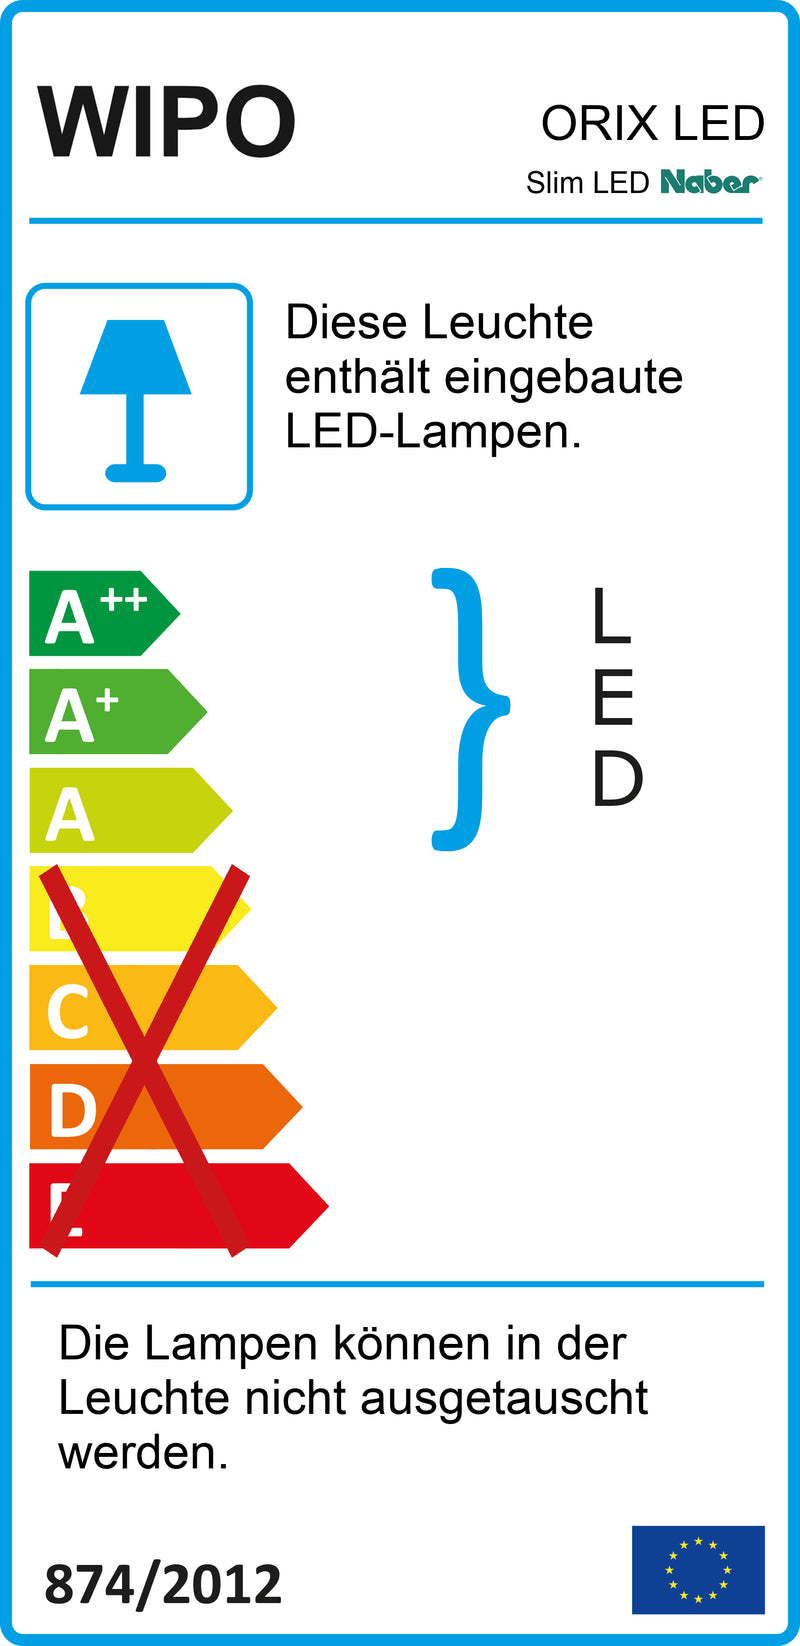 E-Label zu Zeichnung zu Slim LED als Variante weiß, L 900 mm, 13 W von Naber GmbH in der Kategorie Lichttechnik in Österreich auf conceptshop.at